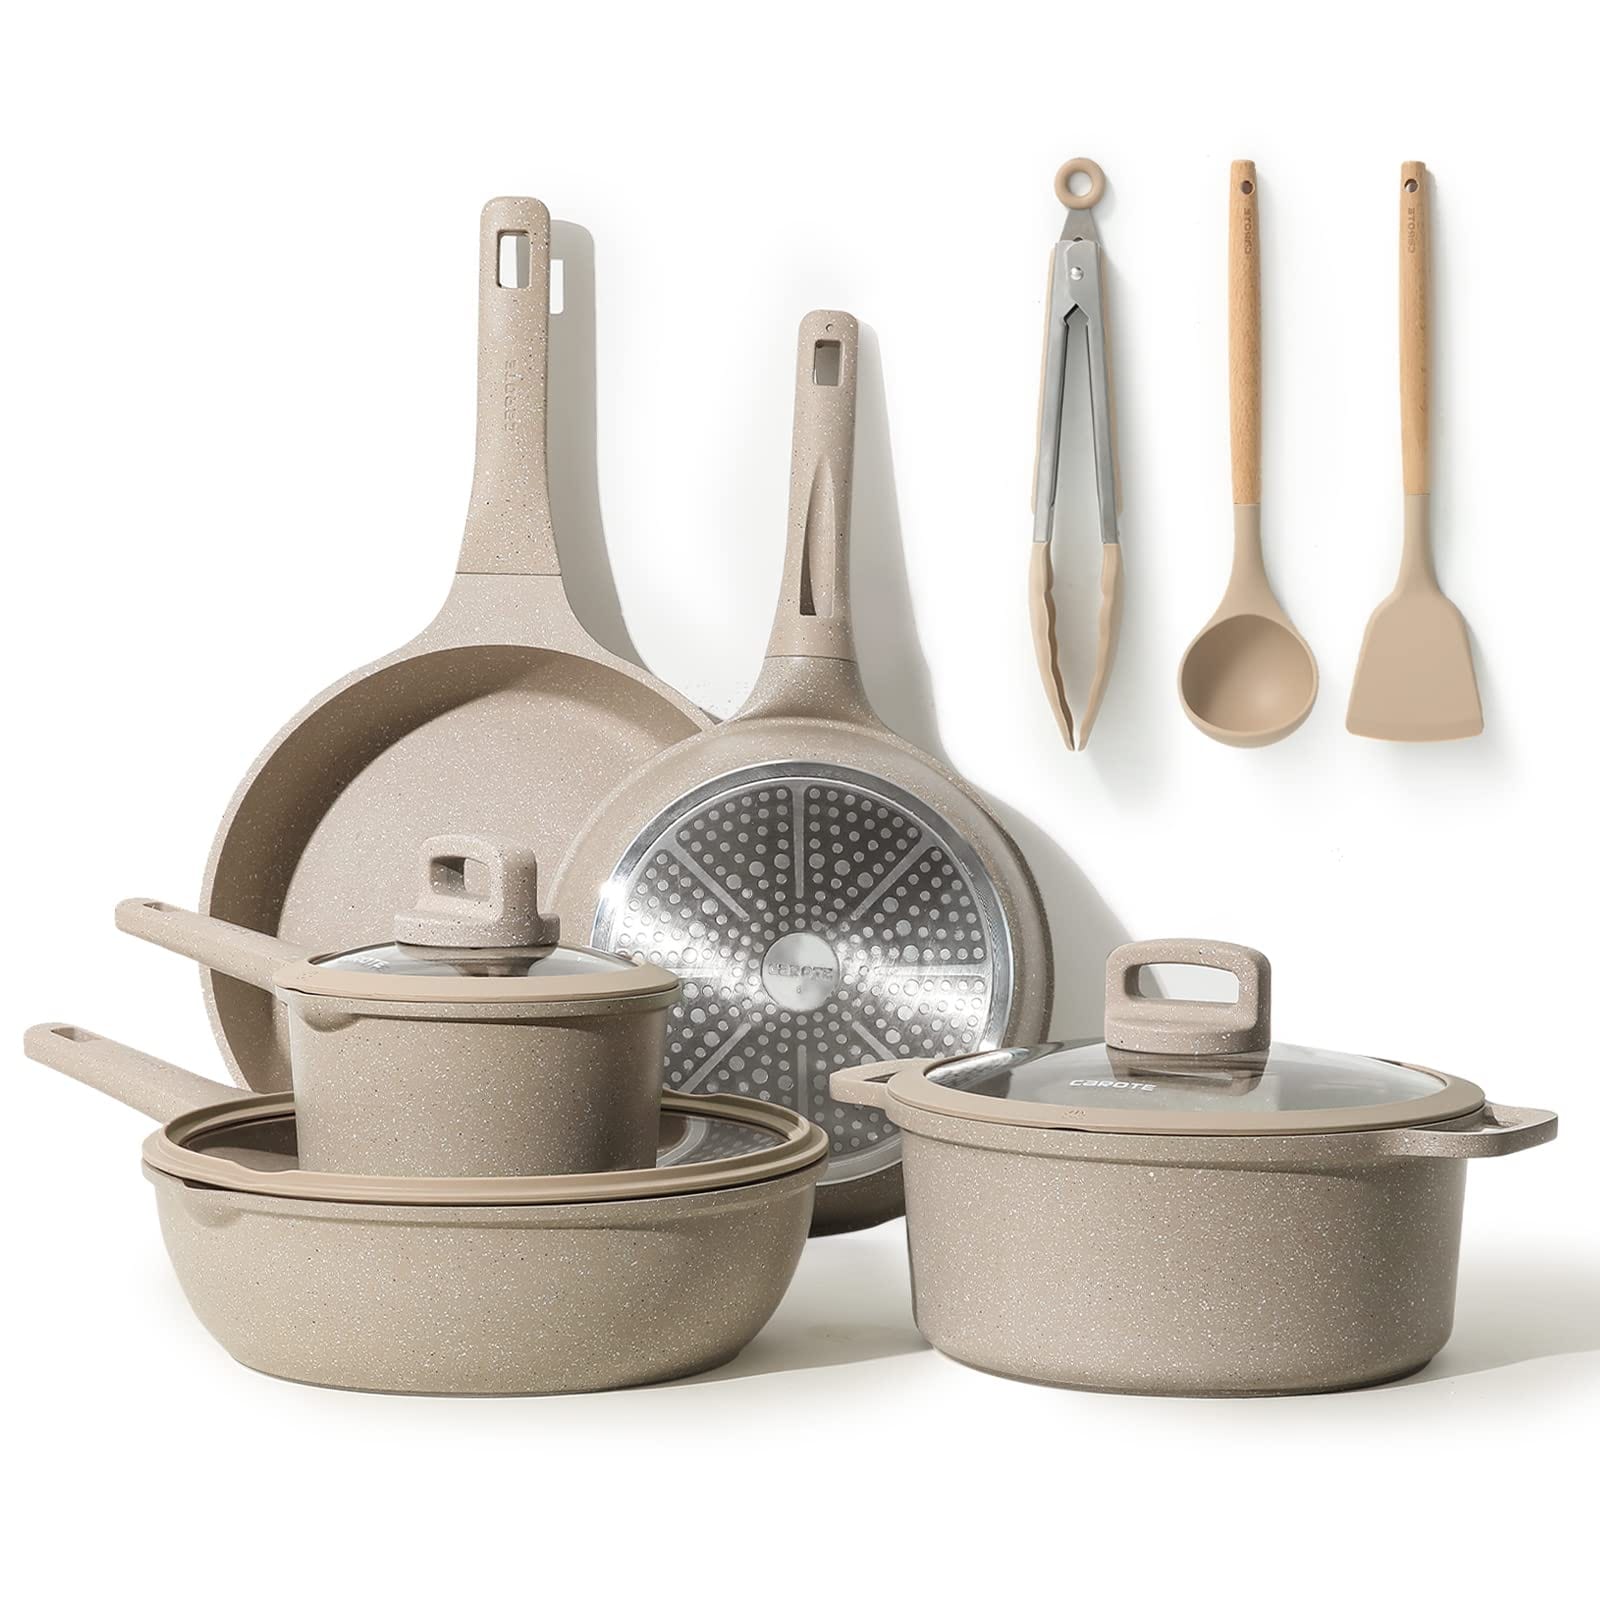 Pots and Pans Set Nonstick, 11Pcs Kitchen Cookware Sets, Stackable